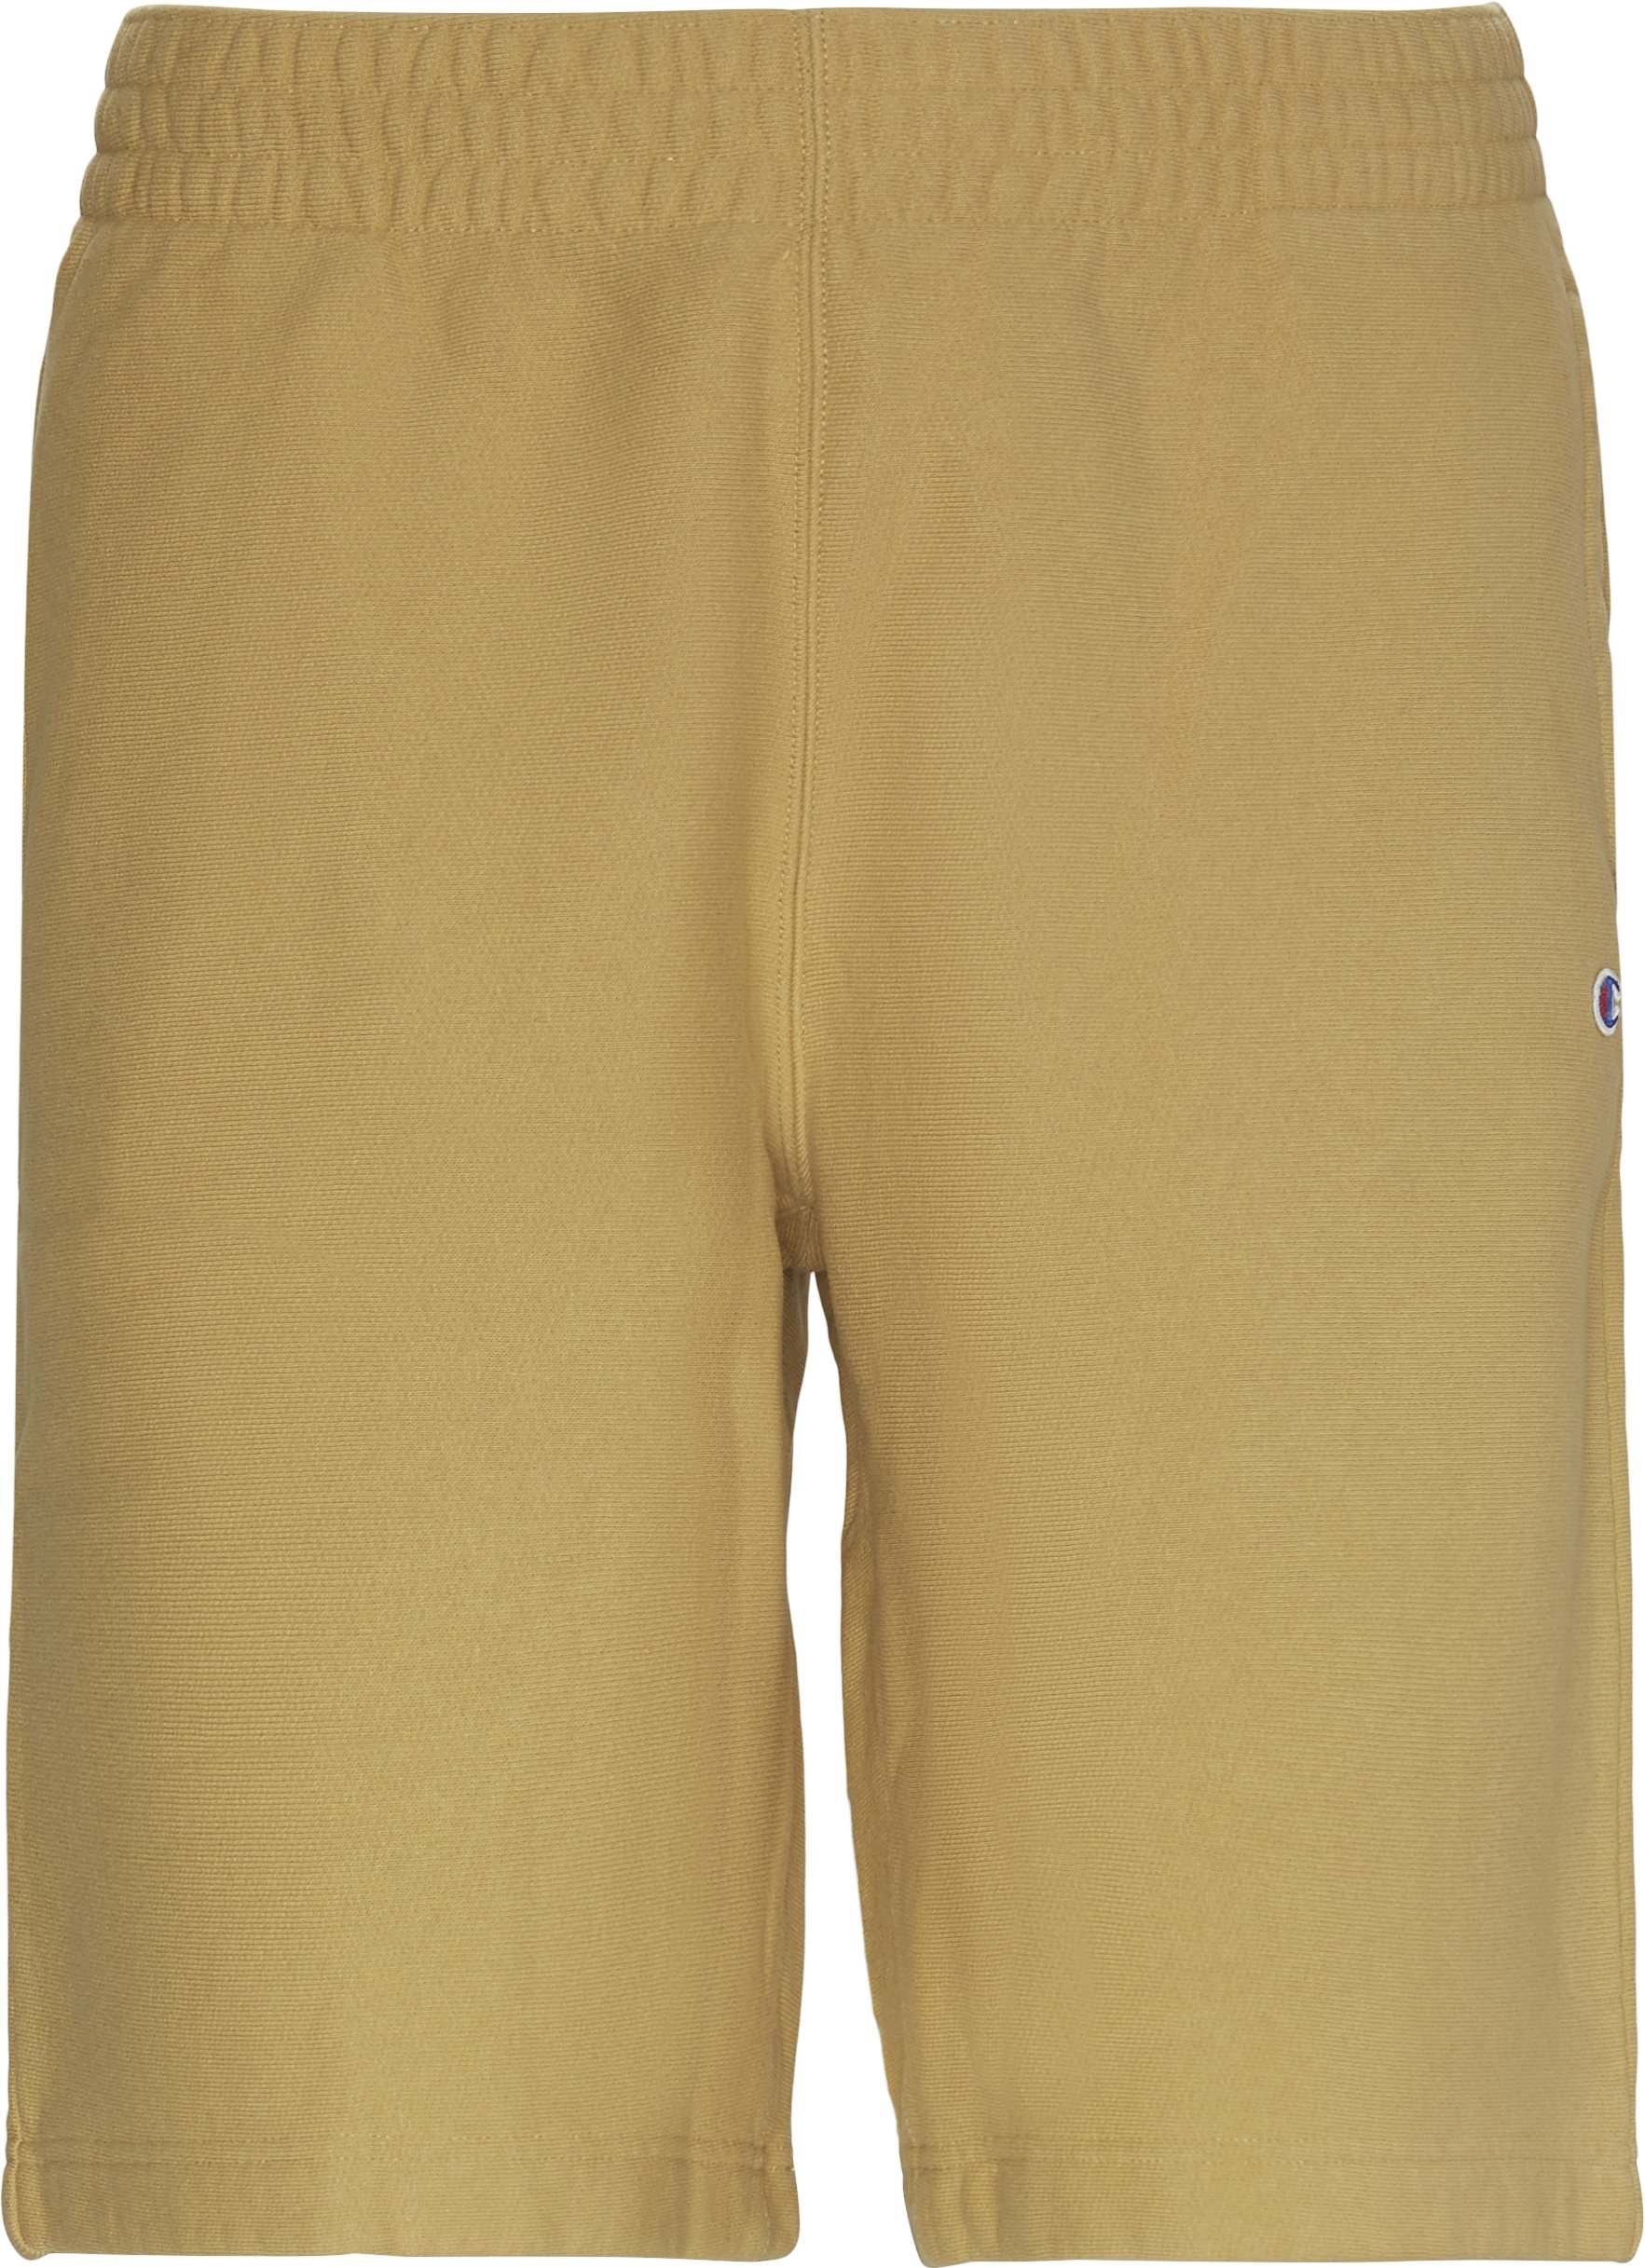 Shorts med omvänd väv - Shorts - Regular fit - Sand